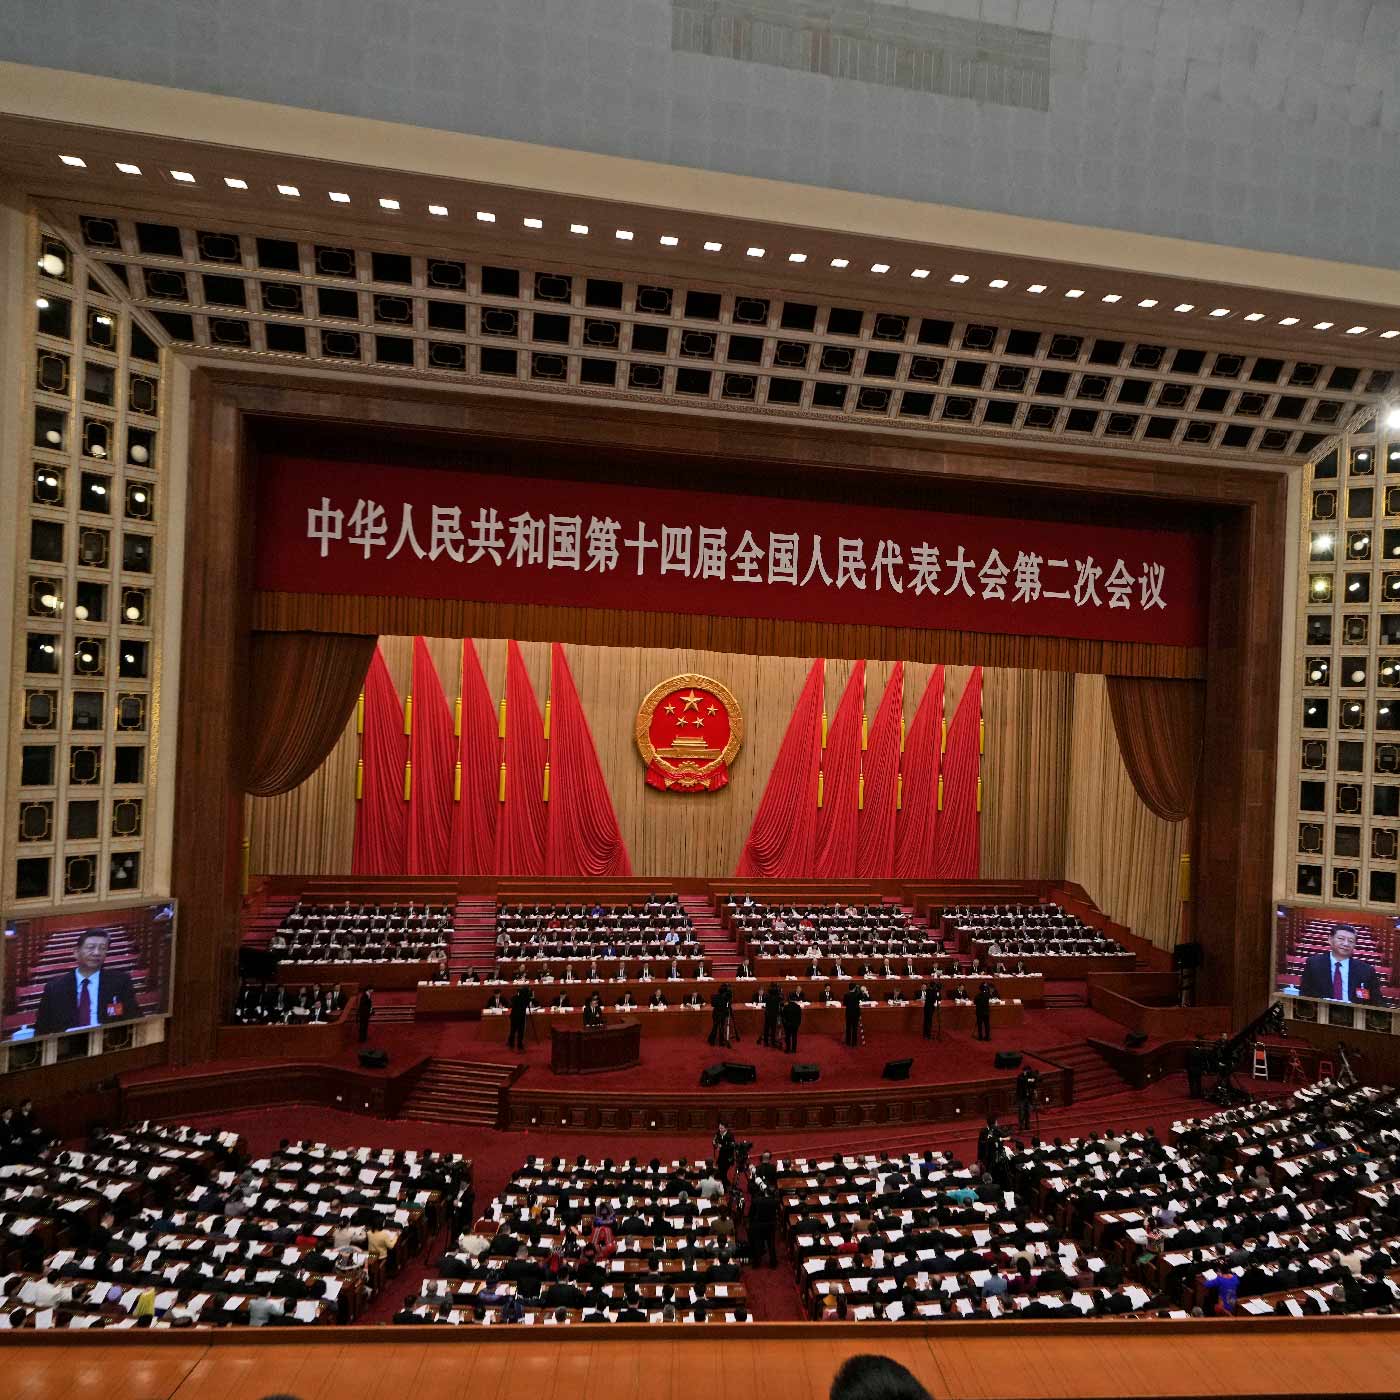 Chinas Jahresplan: Jubelkongress in der Wirtschaftskrise